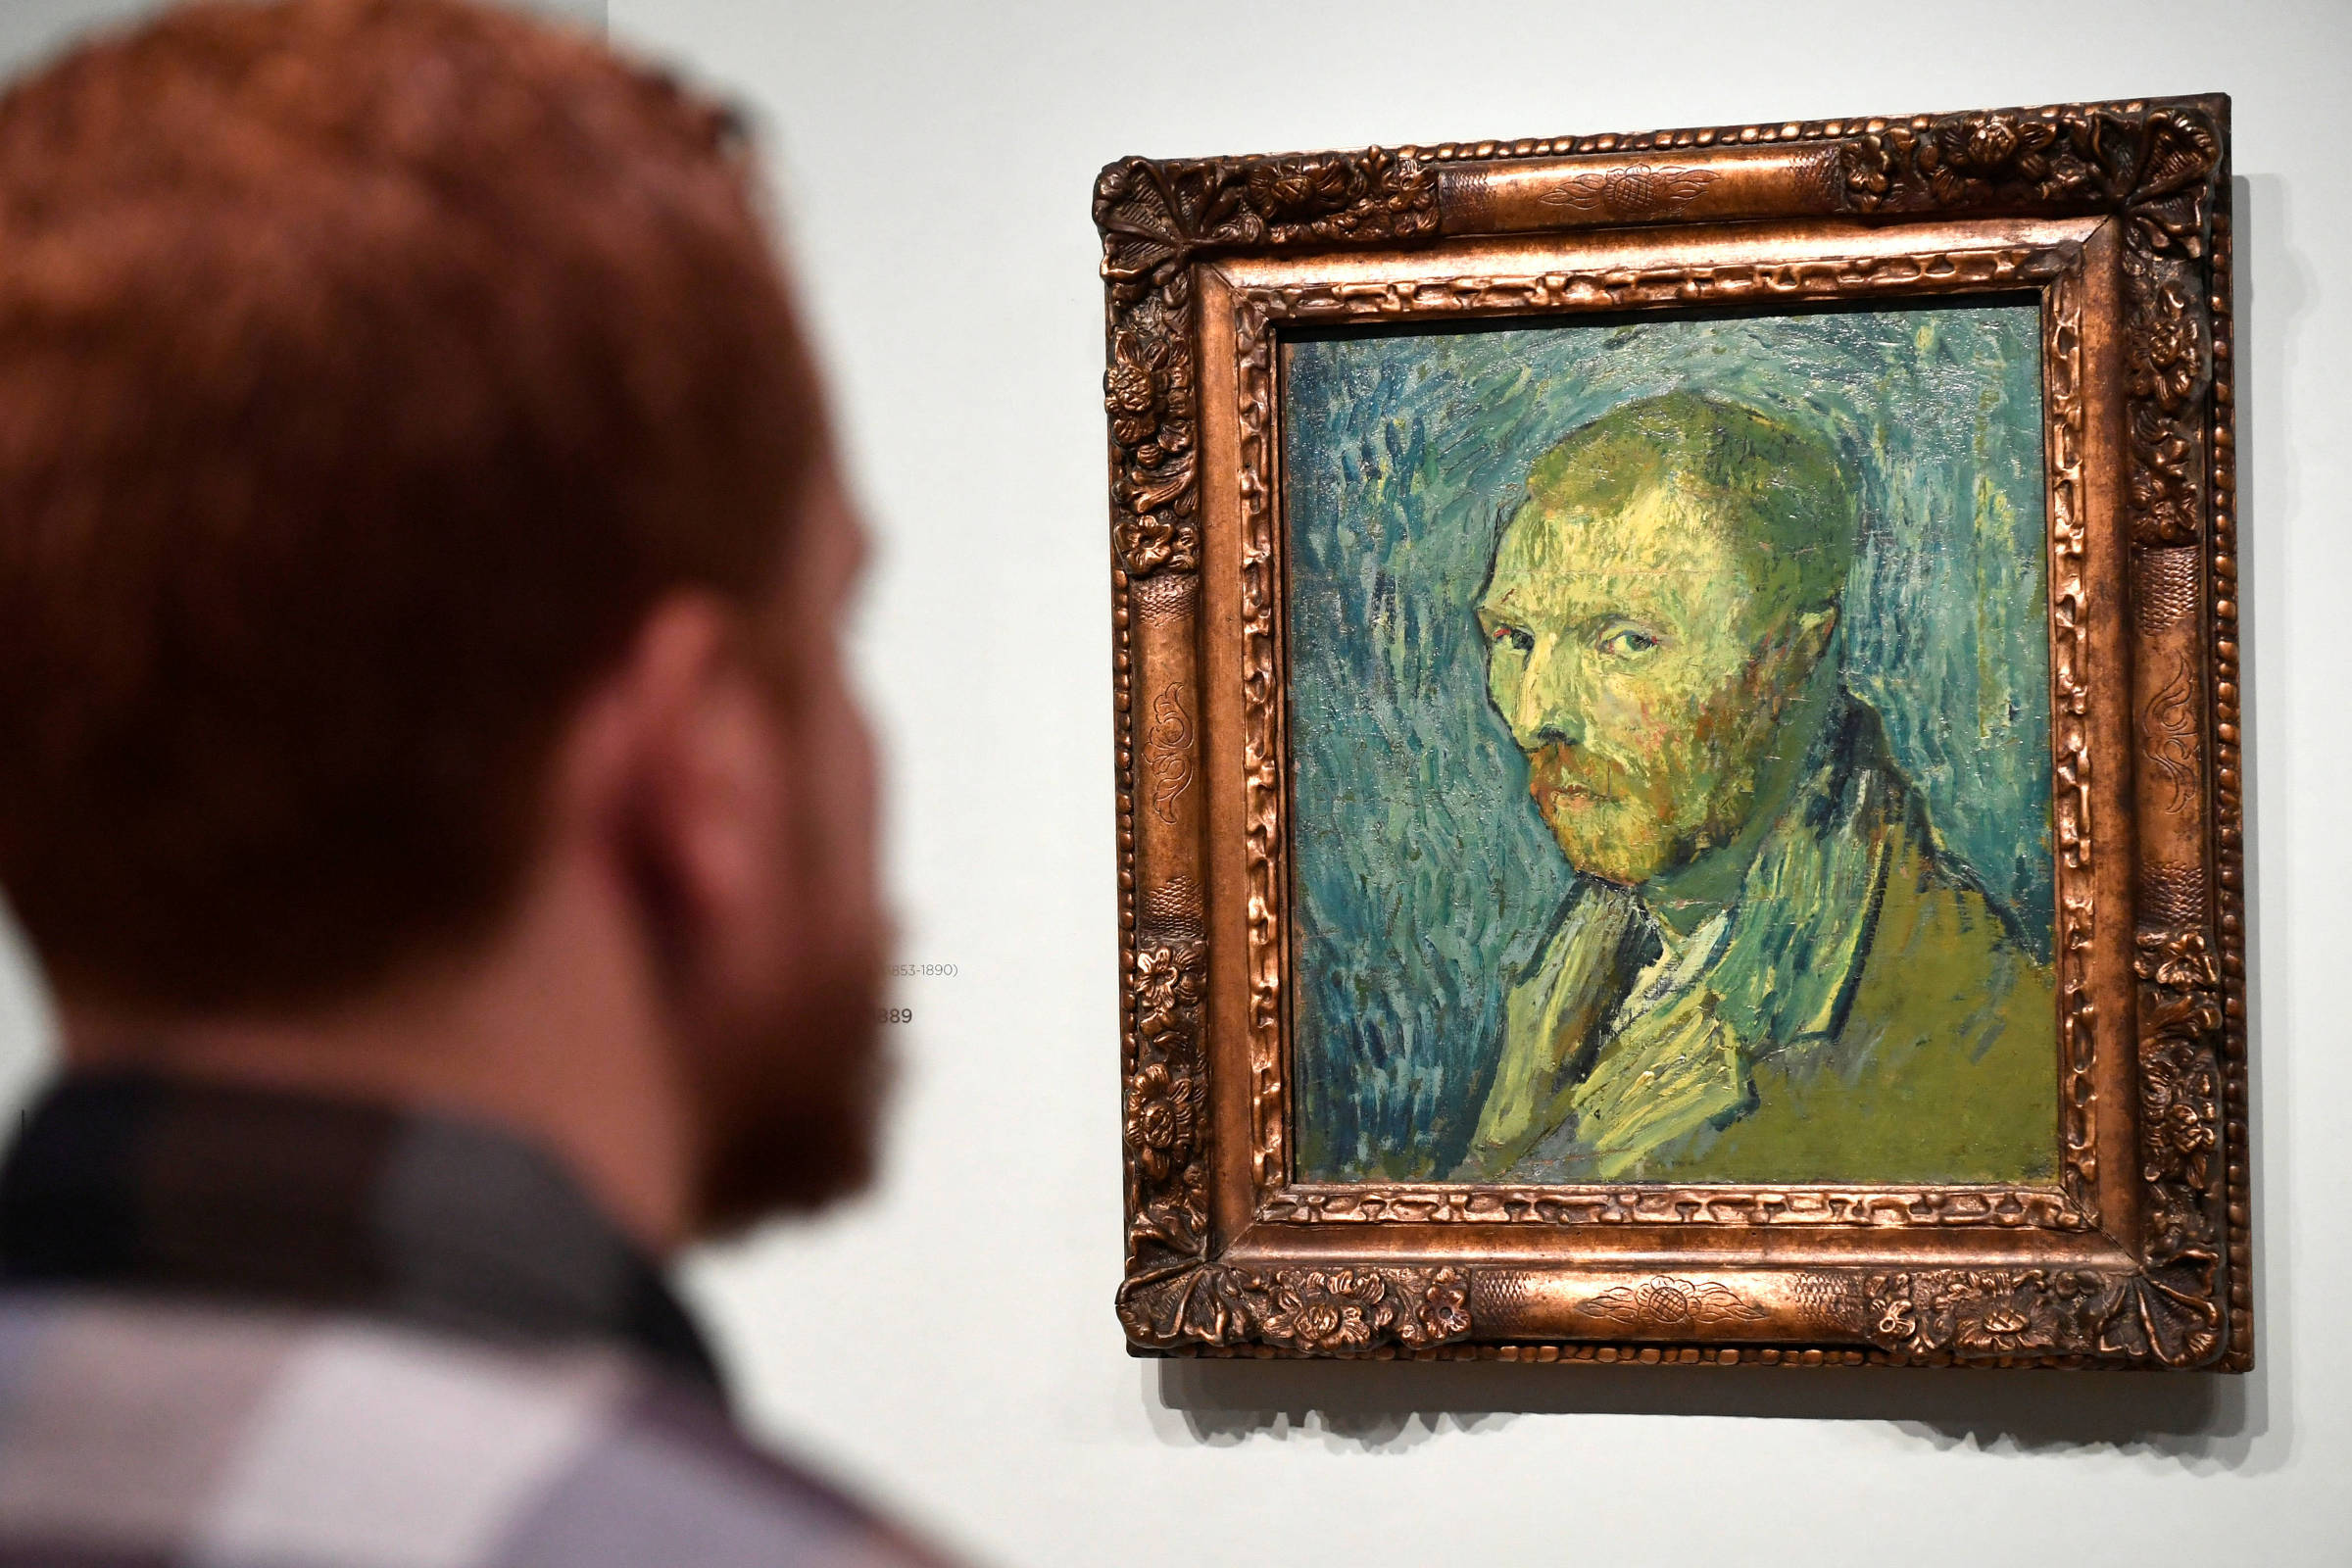 Especialistas autentificam pintura de Van Gogh como um auto-retrato feito durante psicose